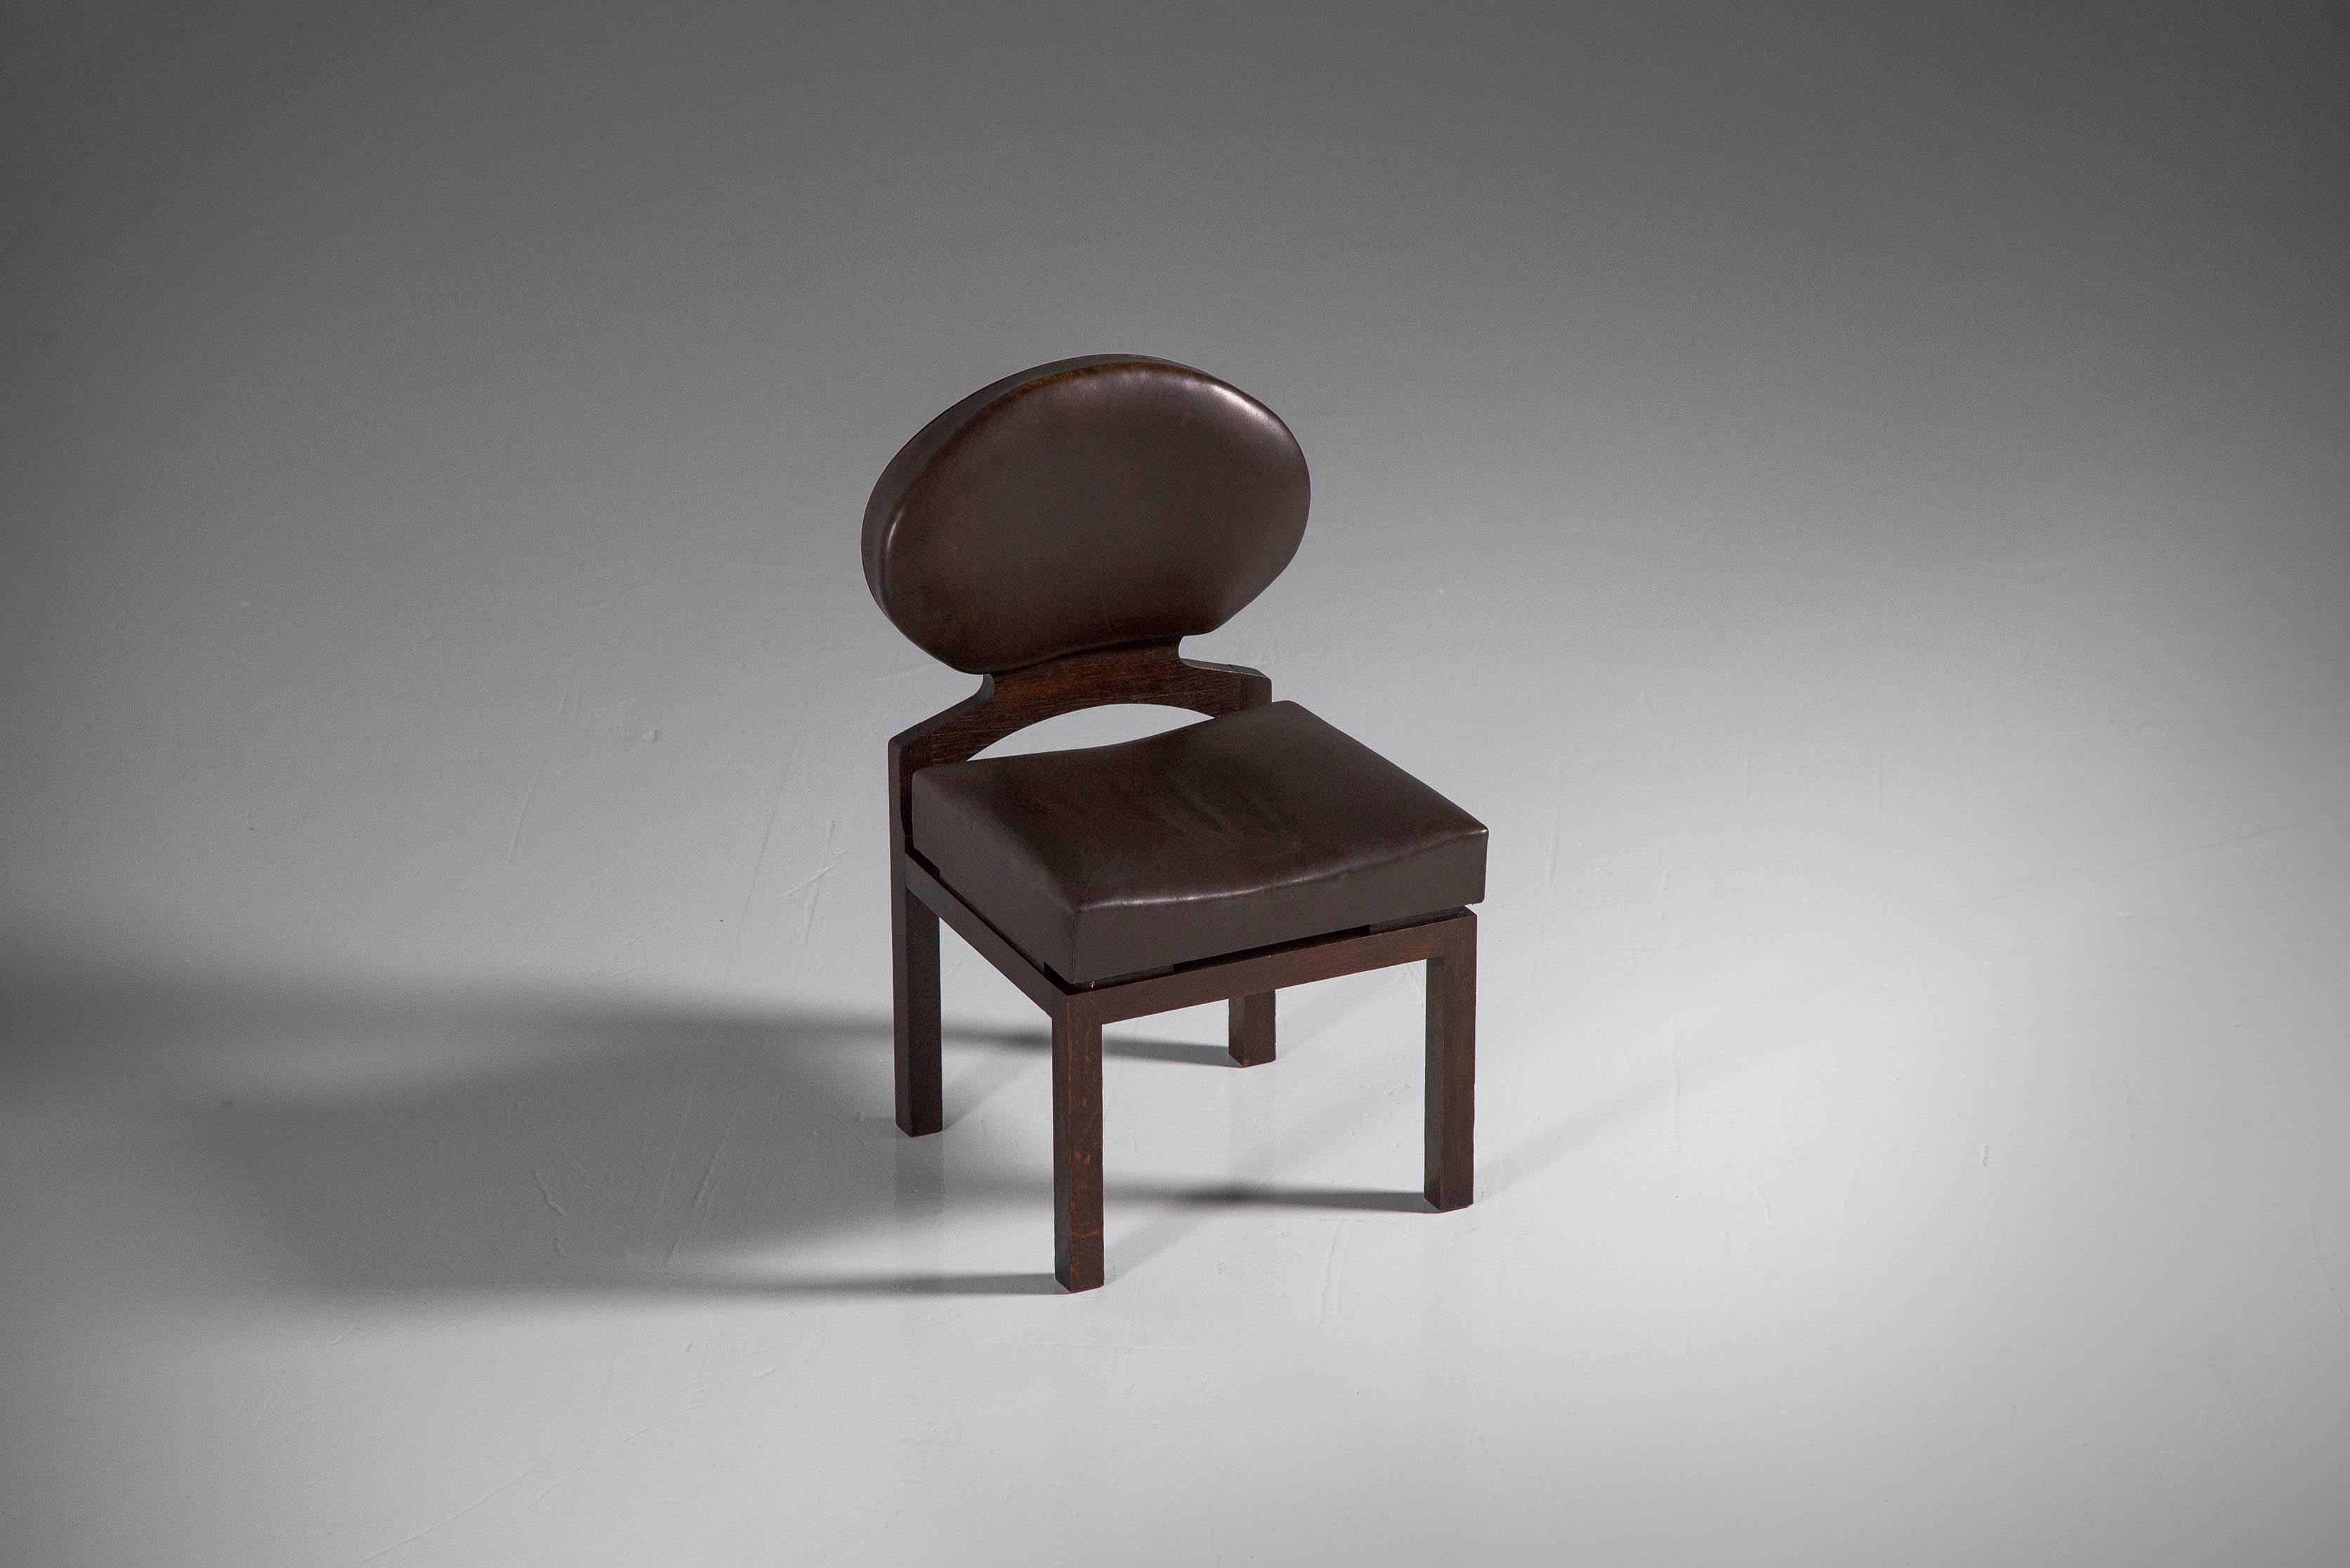 Schöner Stuhl 'Osaka', entworfen von Emiel Veranneman und hergestellt von De Coene, Belgien 1968. Der Osaka-Esszimmerstuhl wurde von Emiel Veranneman entworfen und im belgischen Pavillon auf der Weltausstellung 1970 in Osaka, Japan, verwendet. Mit